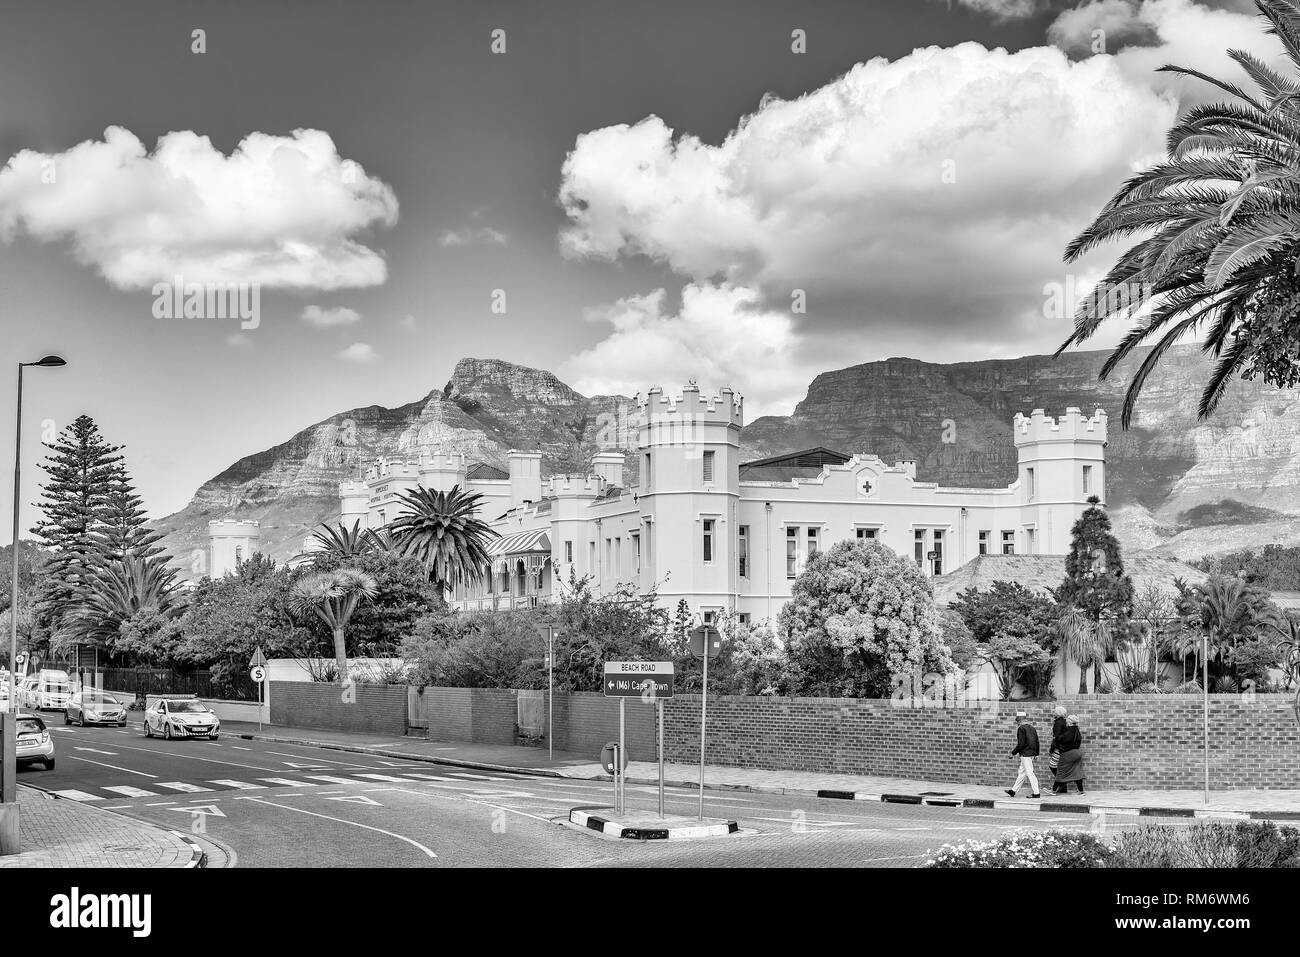 CAPE TOWN, AFRIQUE DU SUD, le 17 août 2018 : l'historique de l'hôpital de Somerset de Green Point à Cape Town. Les gens et les véhicules sont visibles. Monochrome Banque D'Images